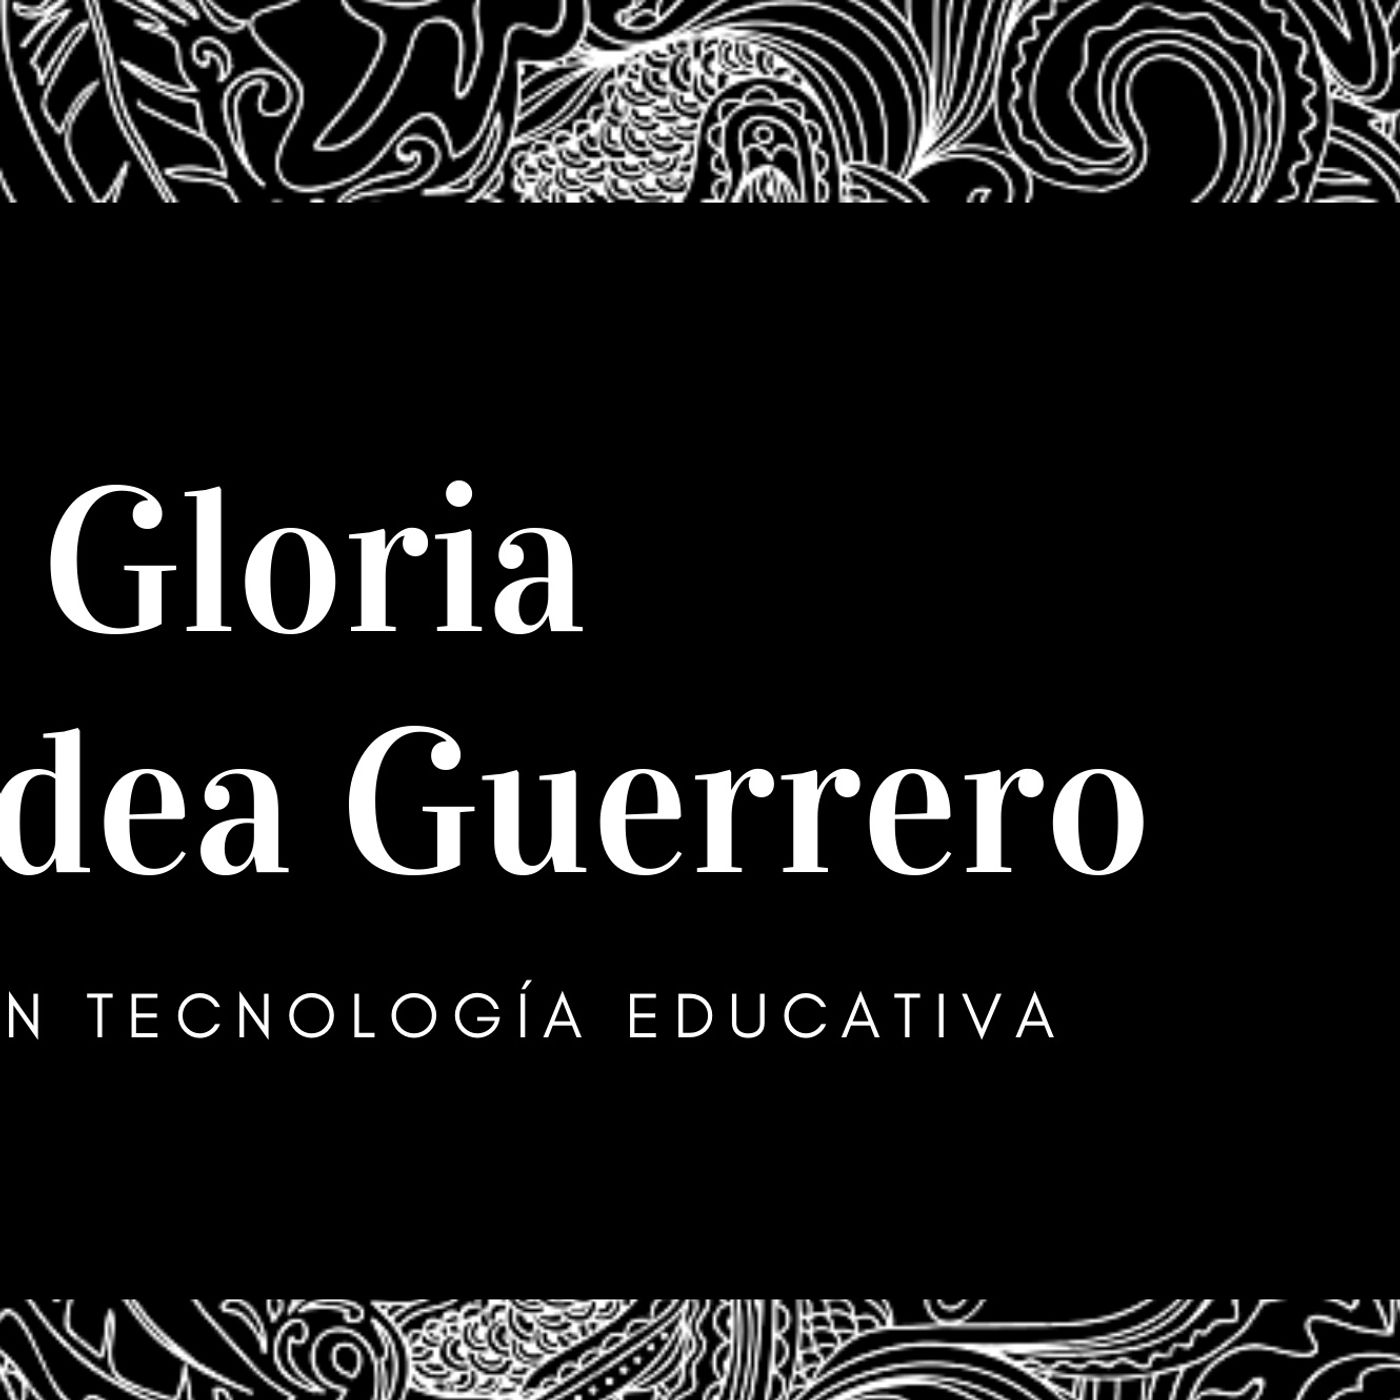 Gloria Guerrero's show